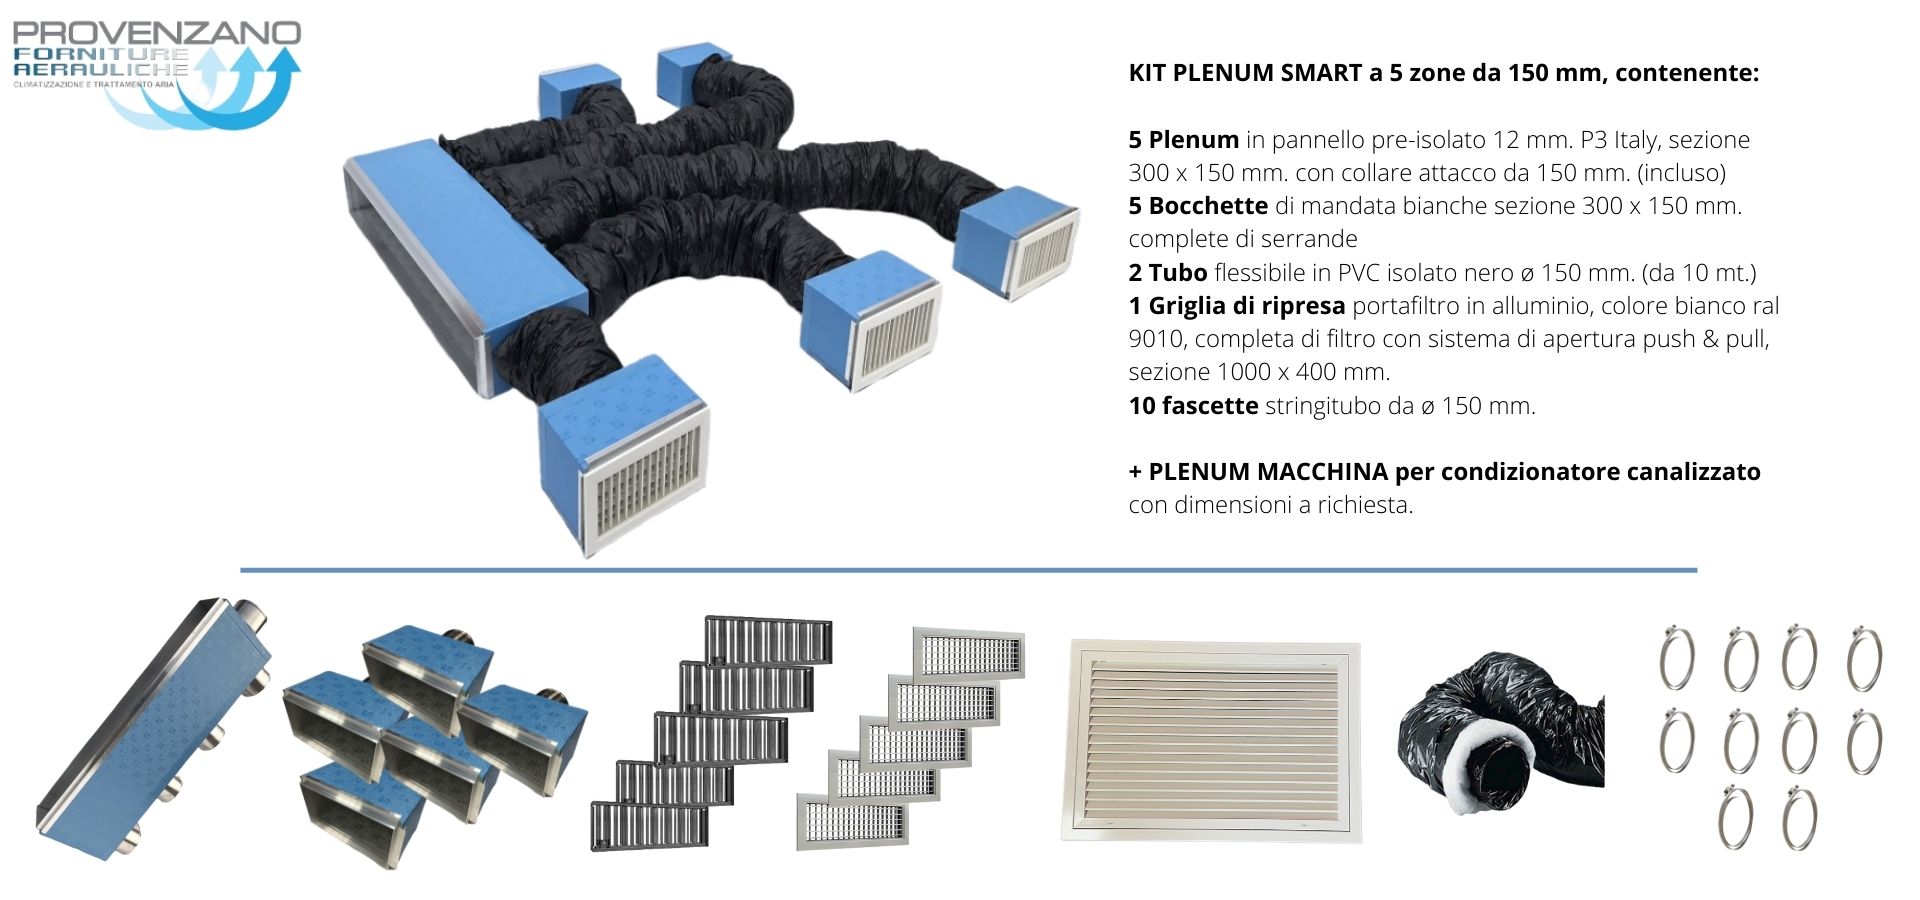 Kit PLENUM SMART a 5 zone da 150 mm + Plenum macchina con attacco per distribuzione aria condizionata